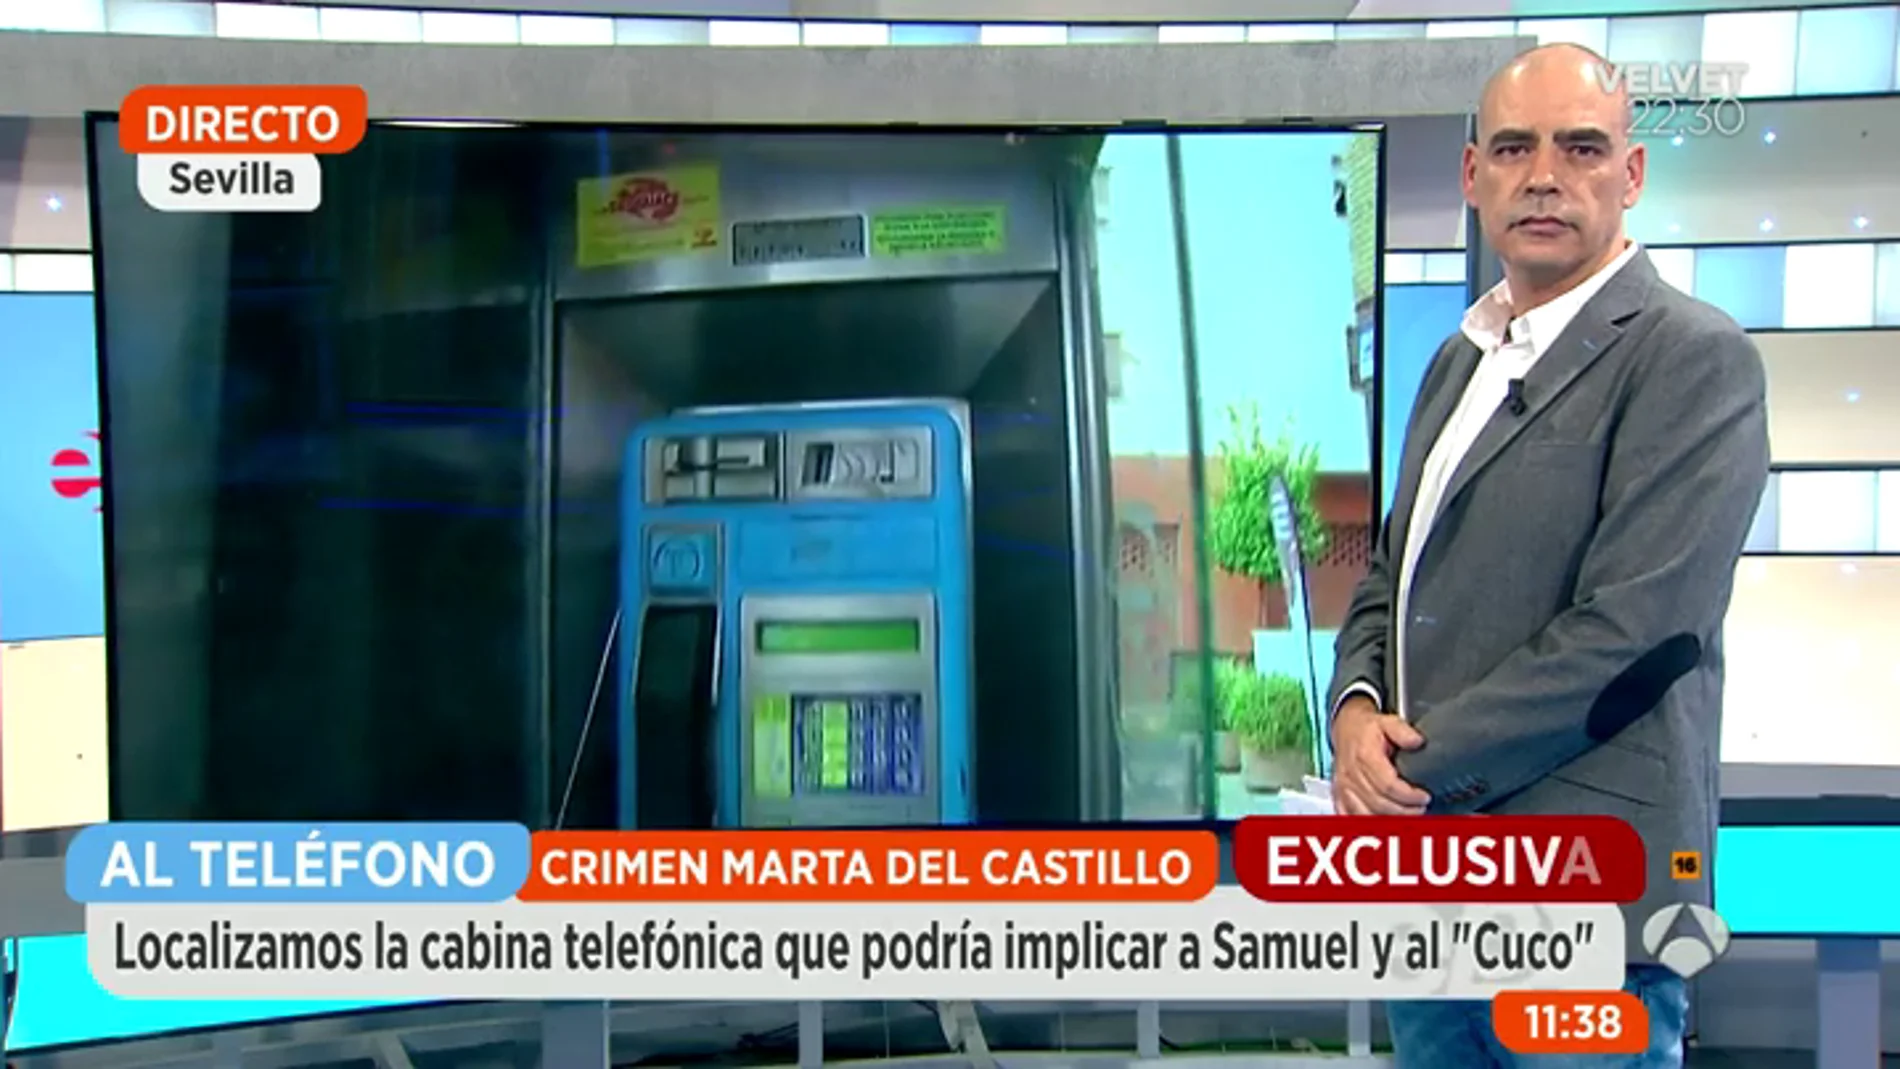 Frame 1068.328299 de: La llamada telefónica que demuestra que Samuel mintió sobre el crimen de Marta del Castillo